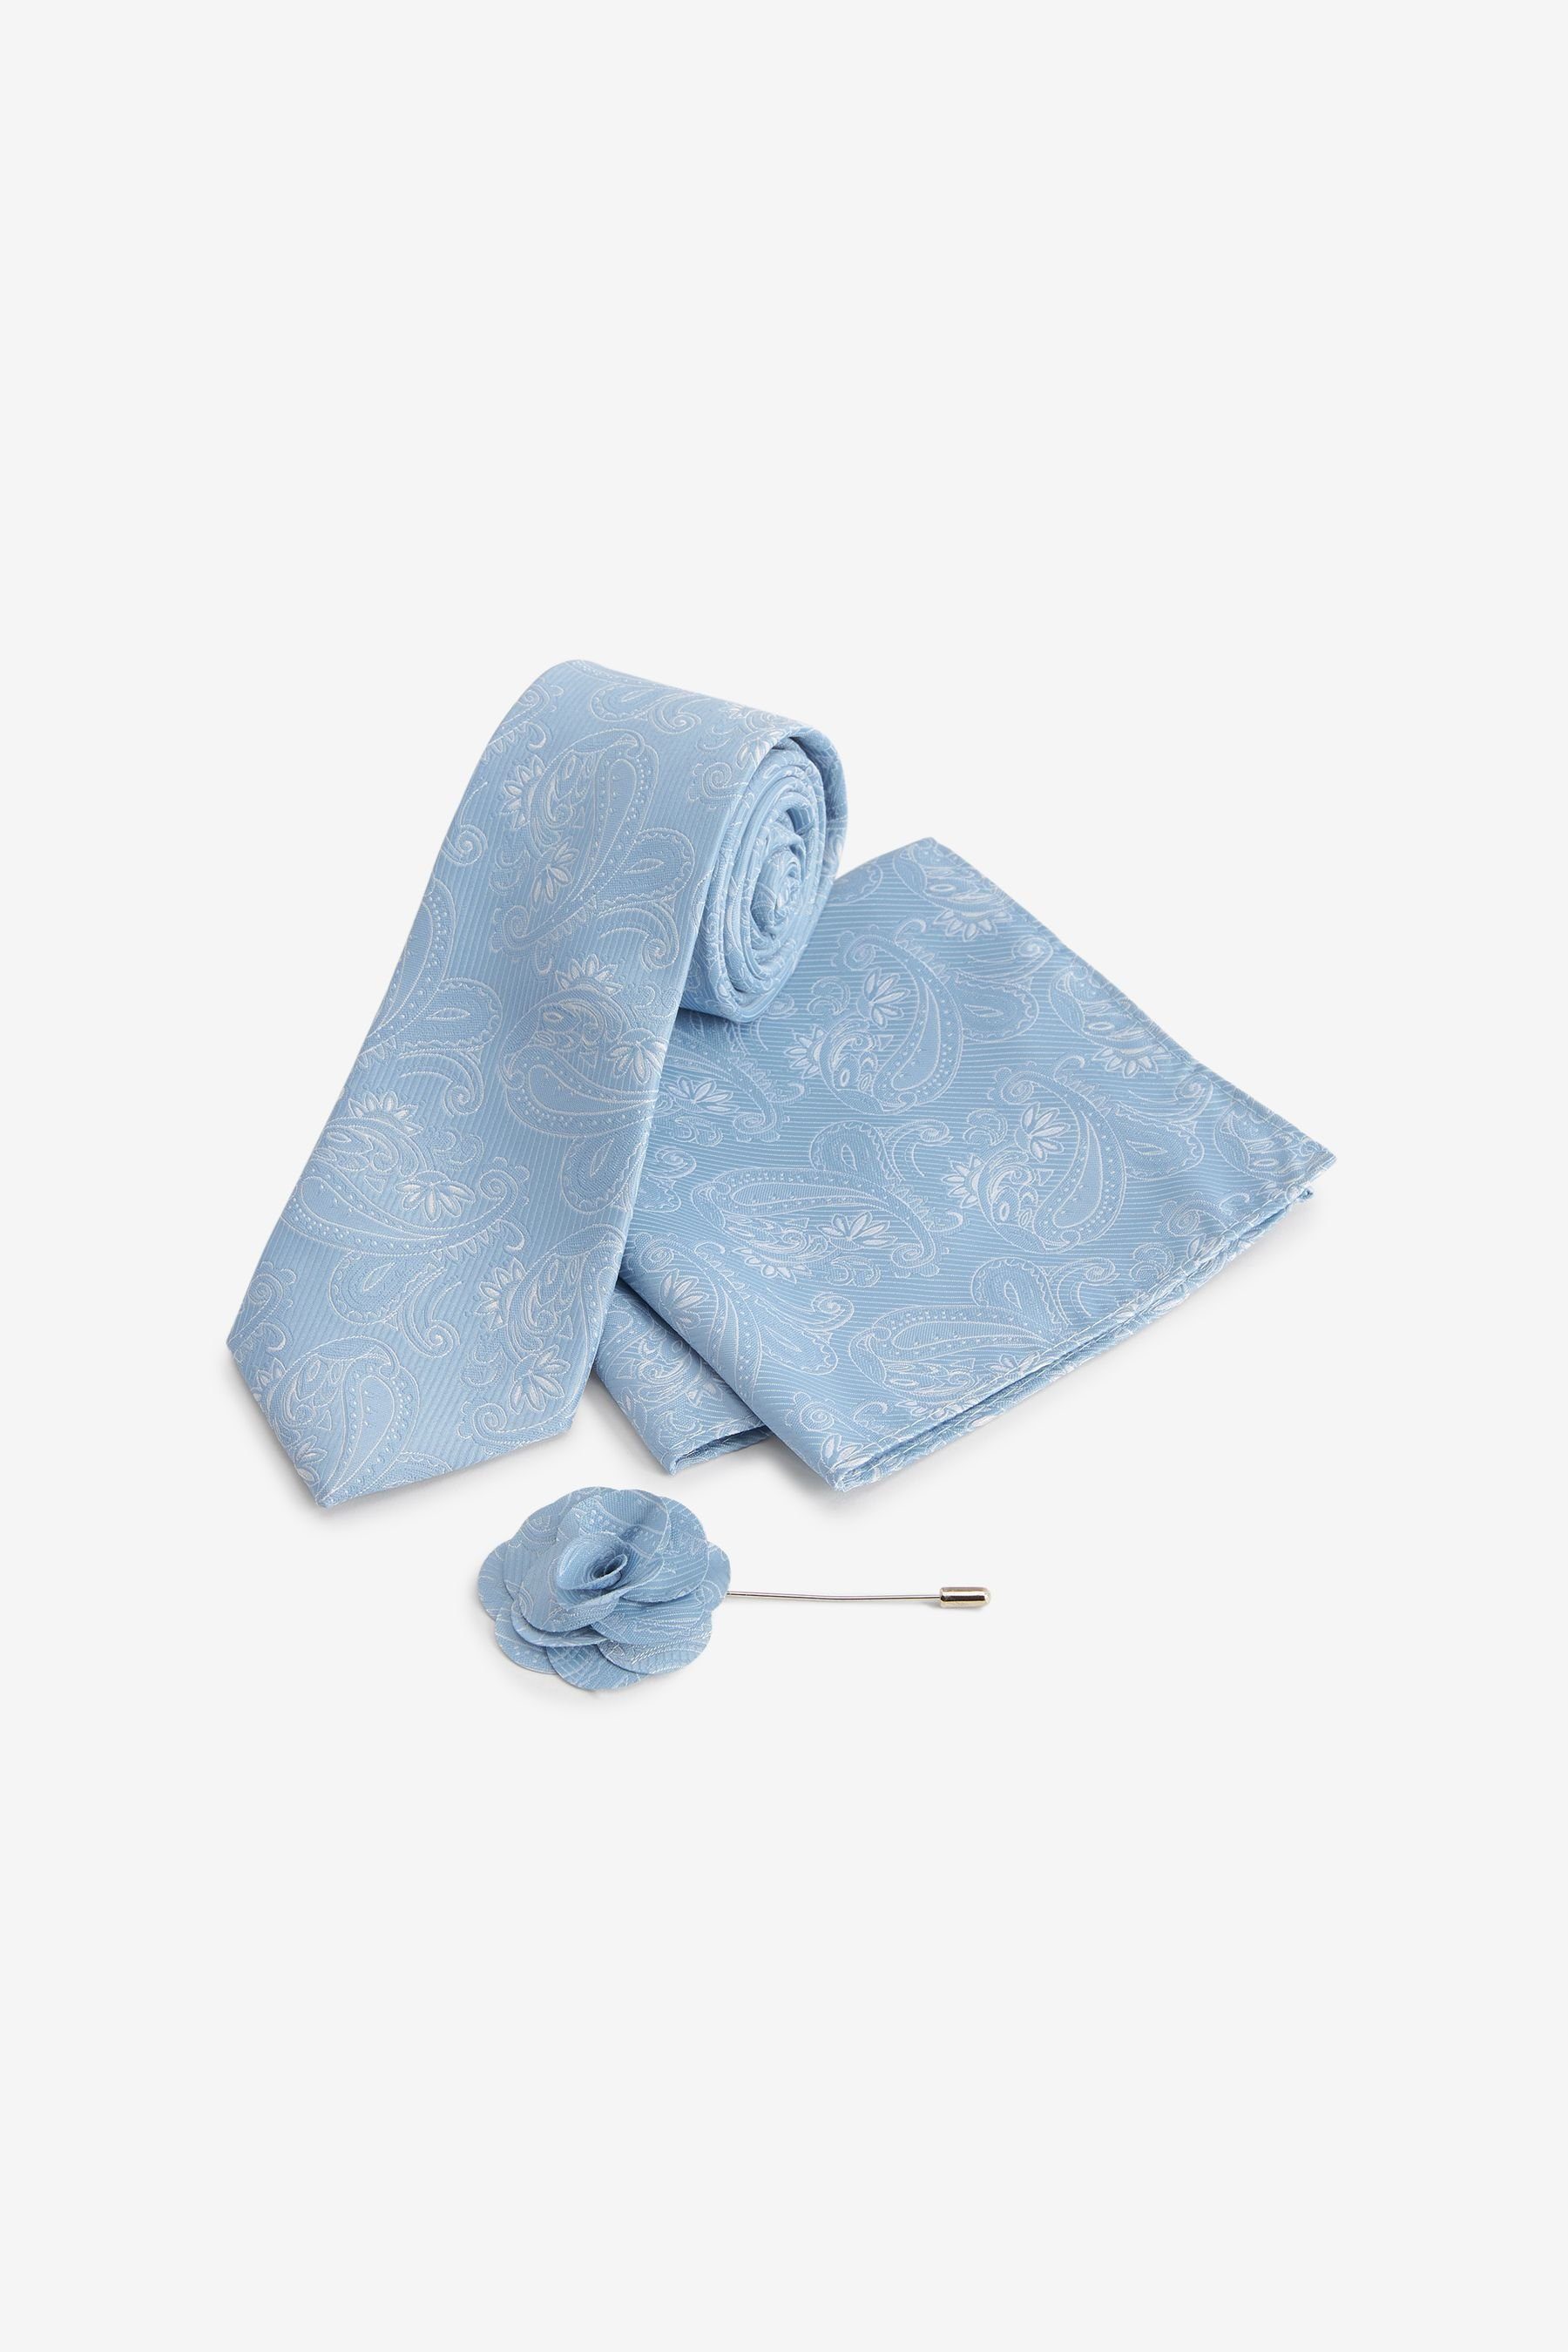 Light Schmale Anstecknadel und Einstecktuch Next Krawatte Krawatte, (3-St) Blue